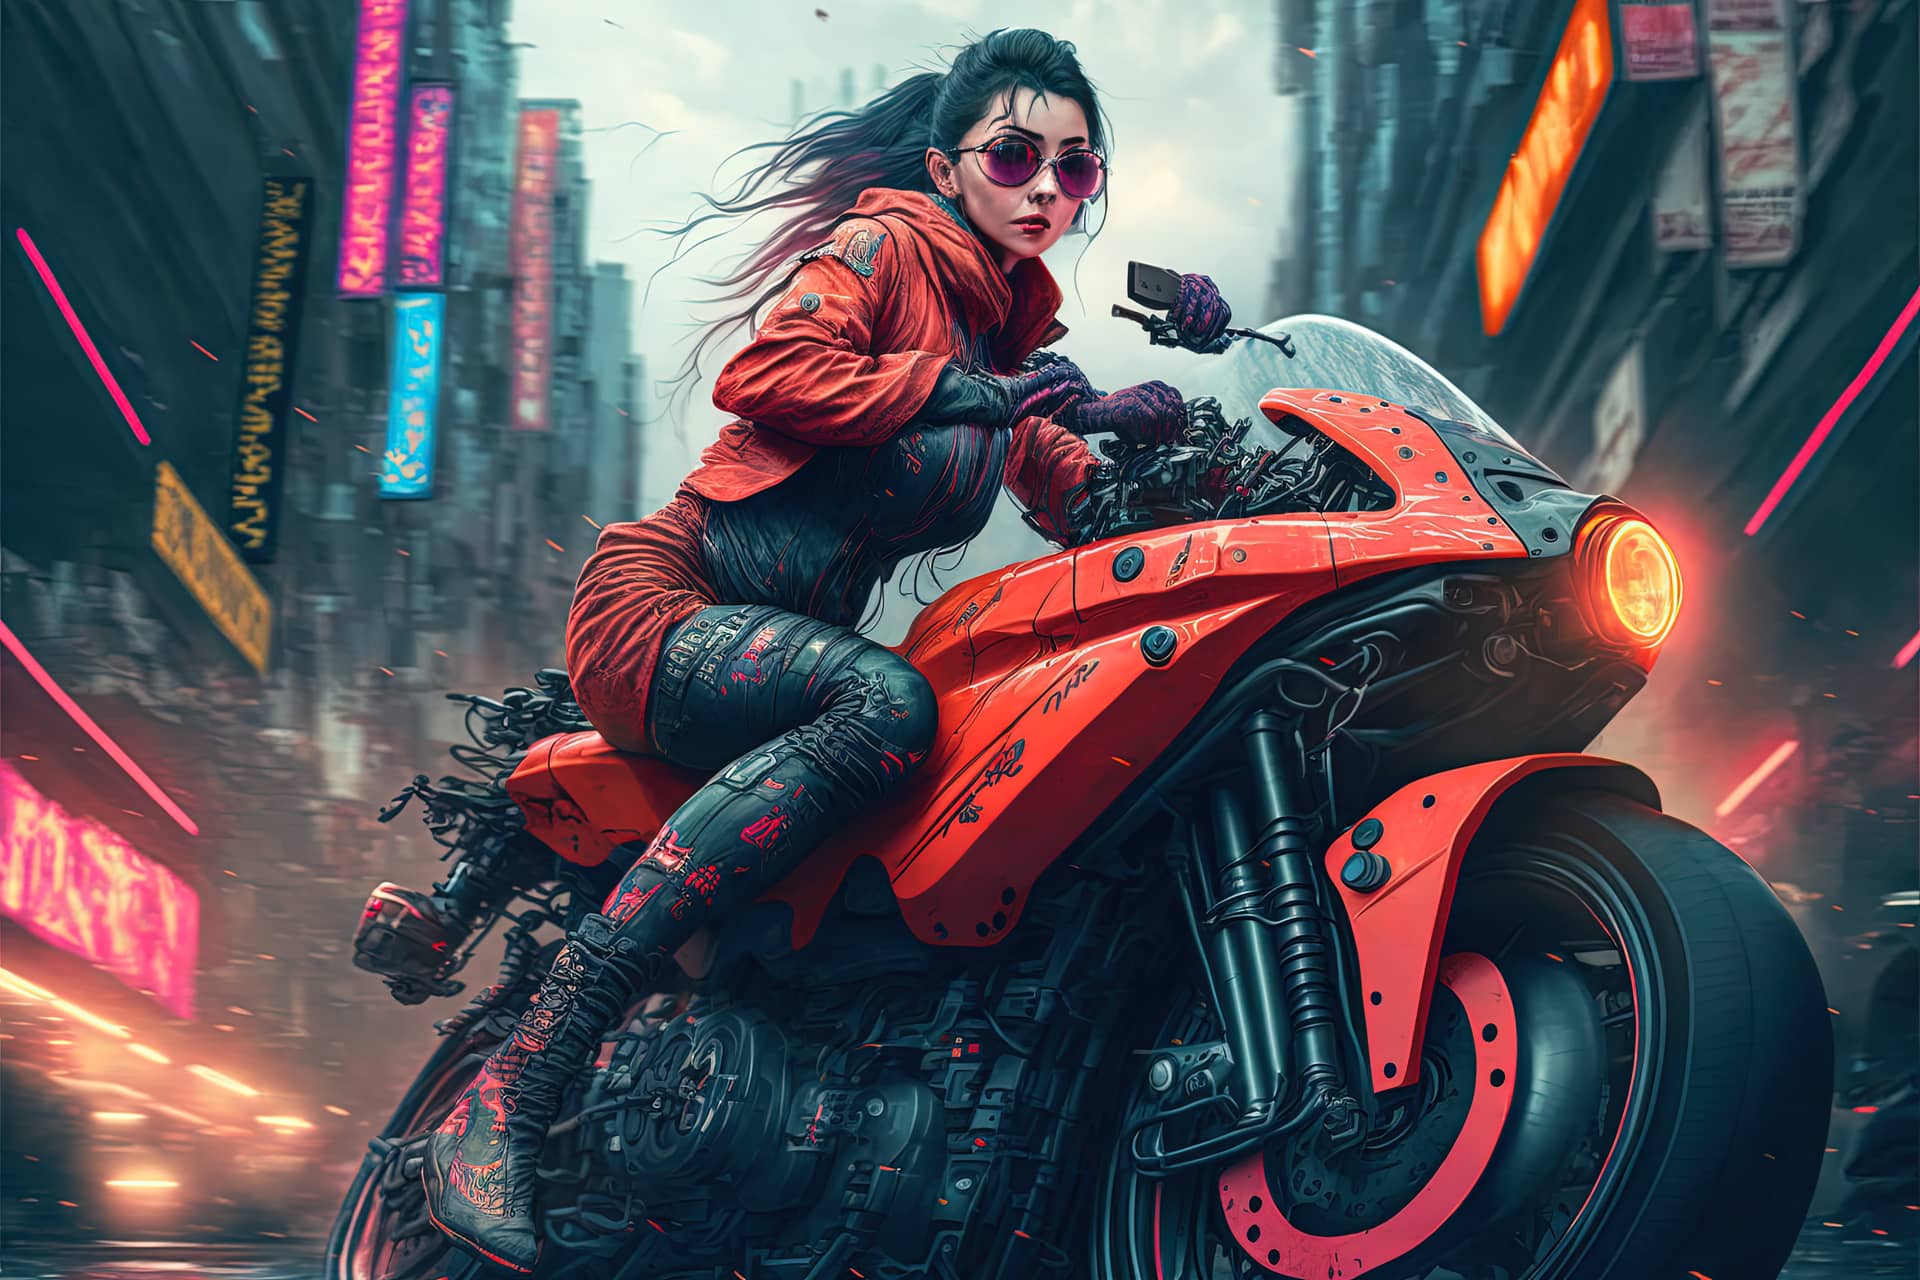 Beautiful cyberpunk girl riding futuristic motorbike futuristic female profile picture